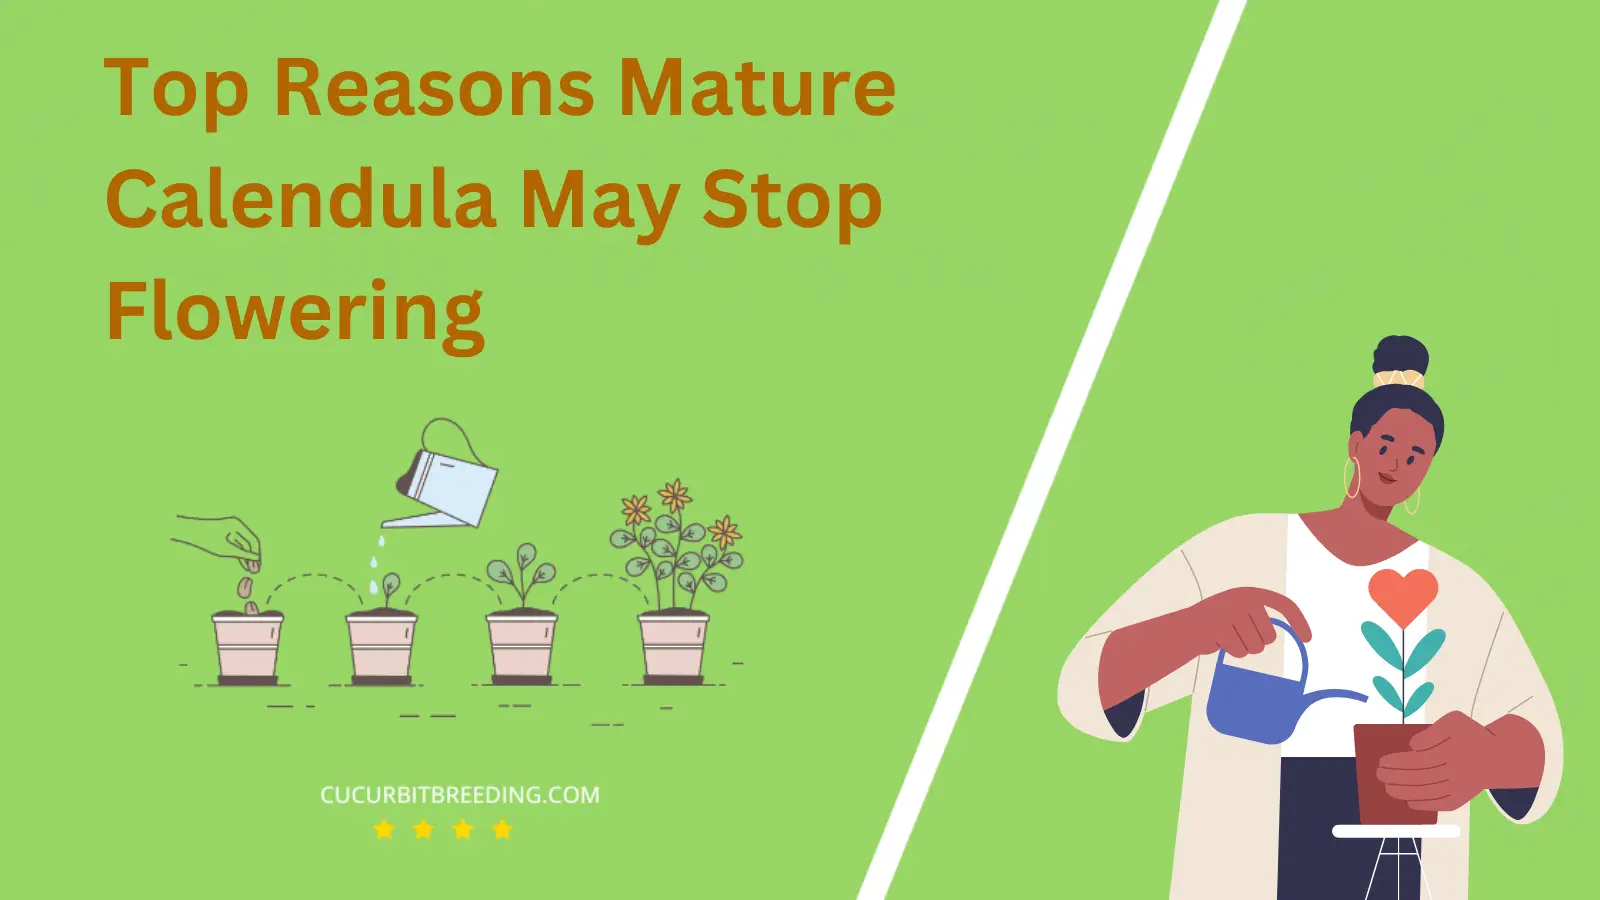 Top Reasons Mature Calendula May Stop Flowering